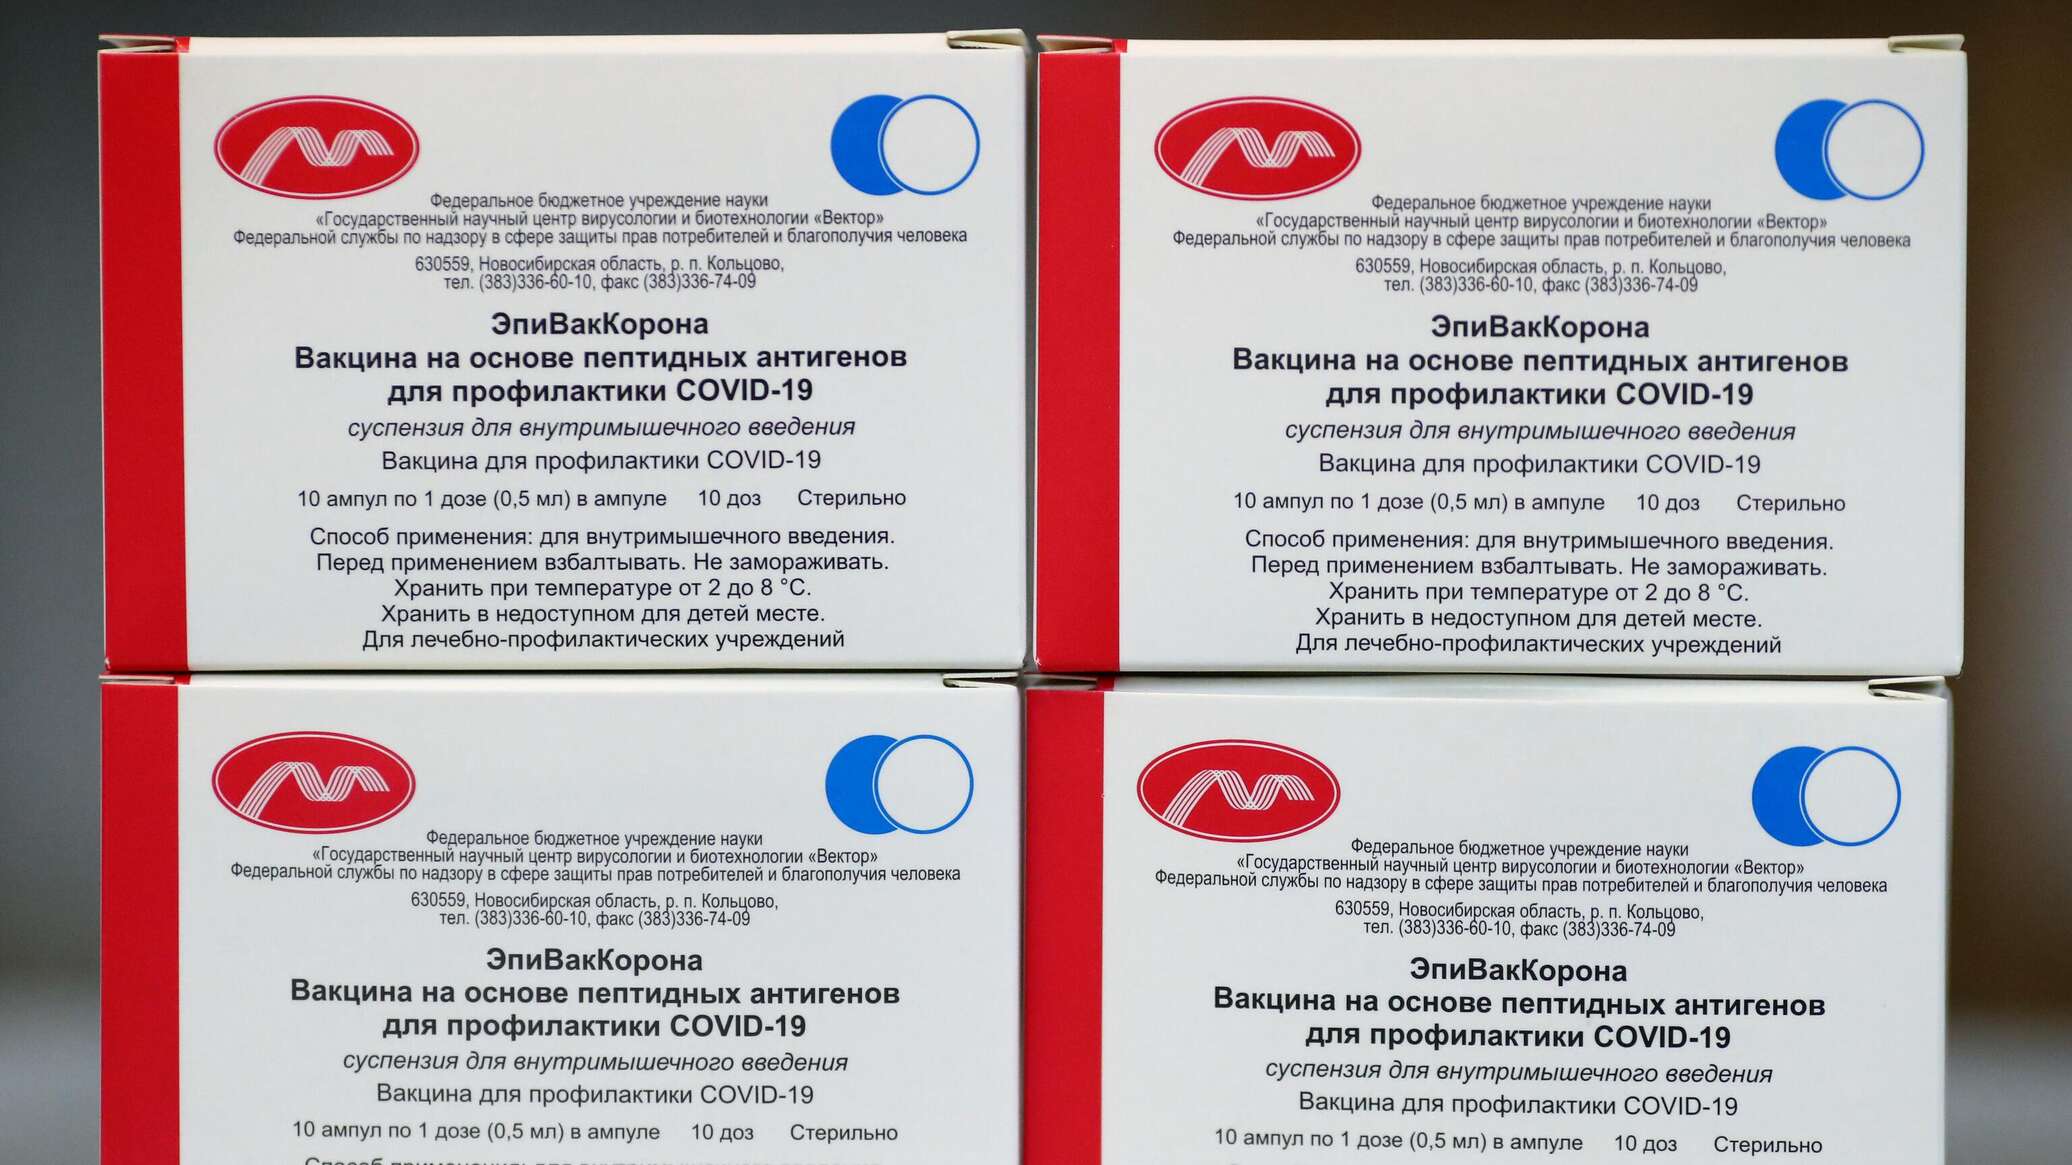 Вакцина 5 доз. Эпиваккорона вакцина. Вакцина на основе пептидных антигенов («эпиваккорона»). Вакцинация от коронавируса вакцины. Производители вакцины от коронавируса в России.